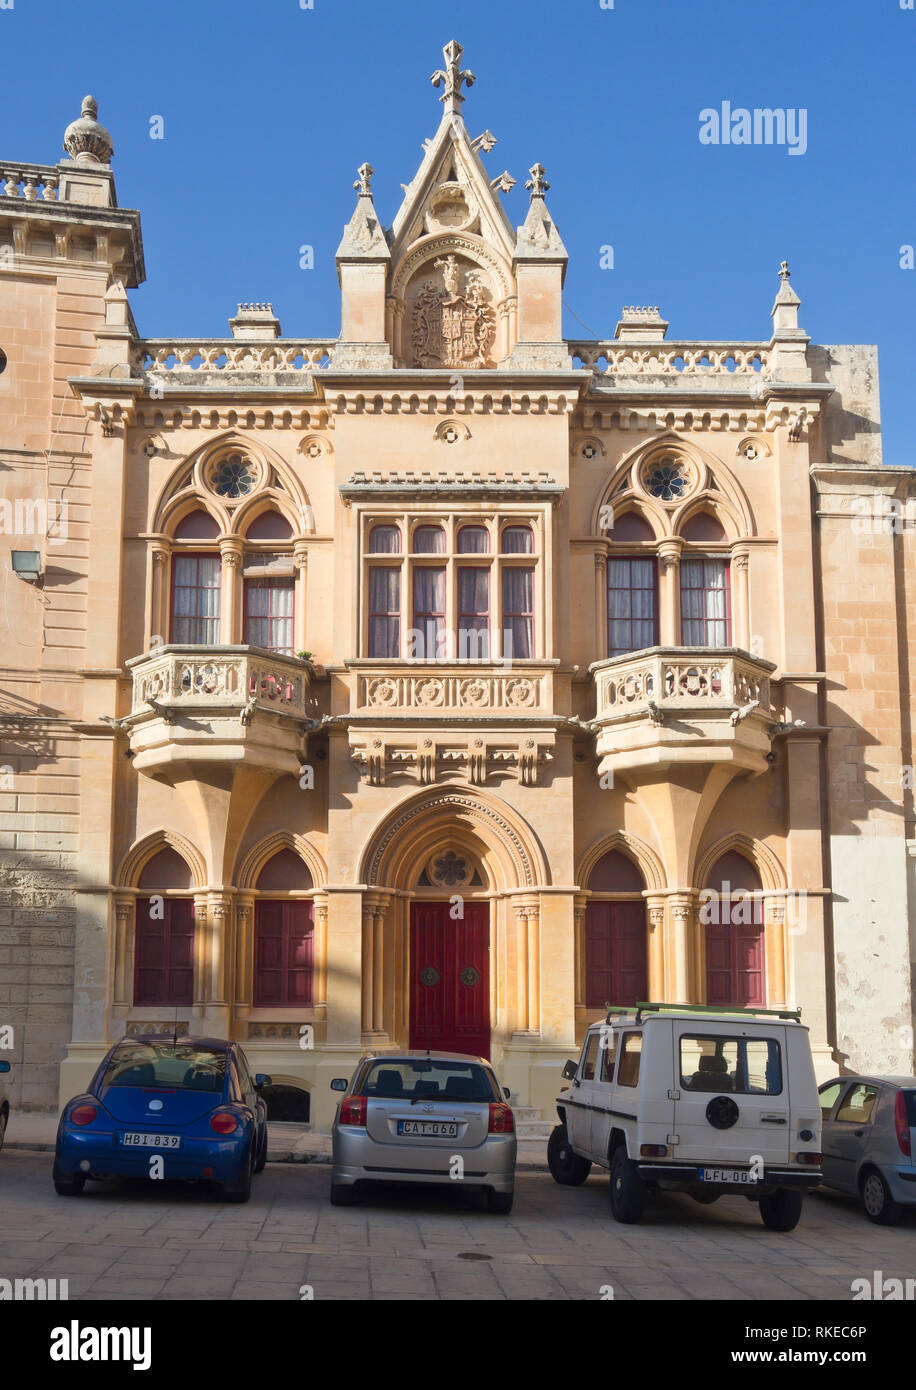 Los edificios de la ciudad amurallada de Mdina, la antigua capital de Malta Foto de stock